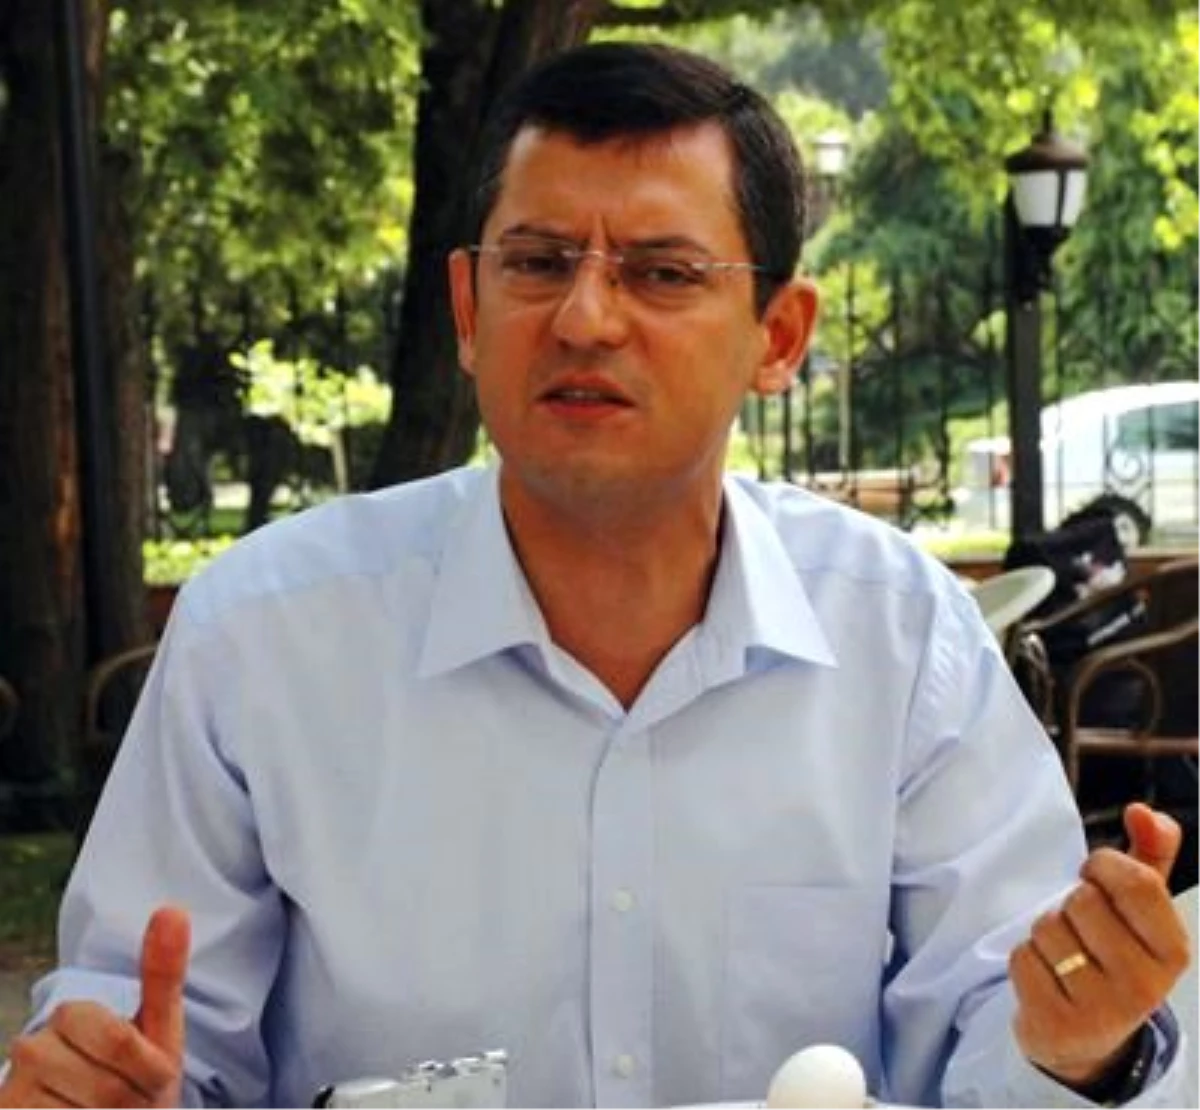 CHP Manisa Milletvekili Özel: "Belediye Başkanlığına Aday Değilim"